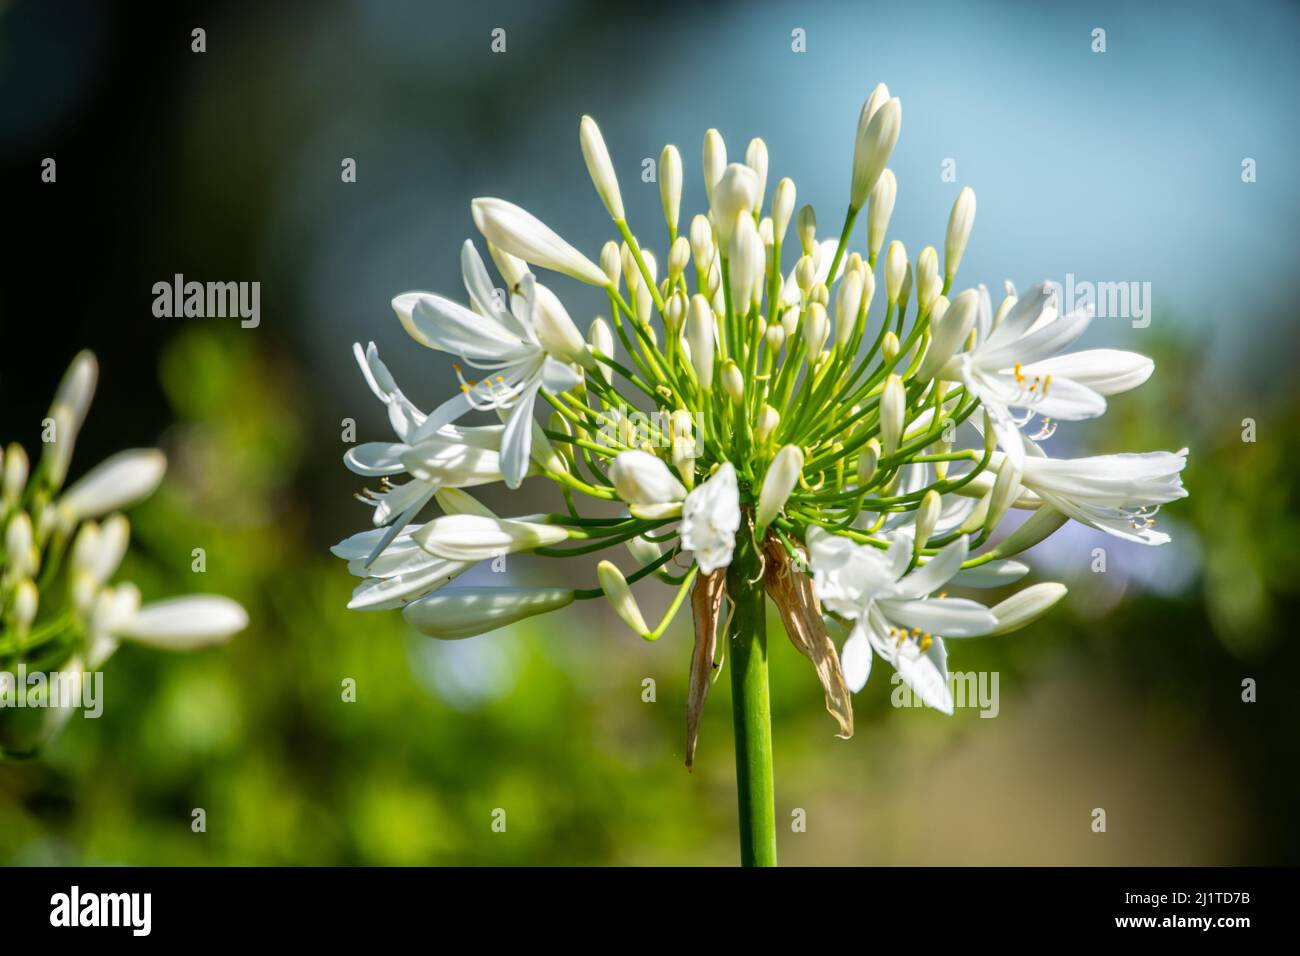 Primo piano dell'agapanthus bianco con le fioriture che iniziano ad aprirsi. Foto Stock